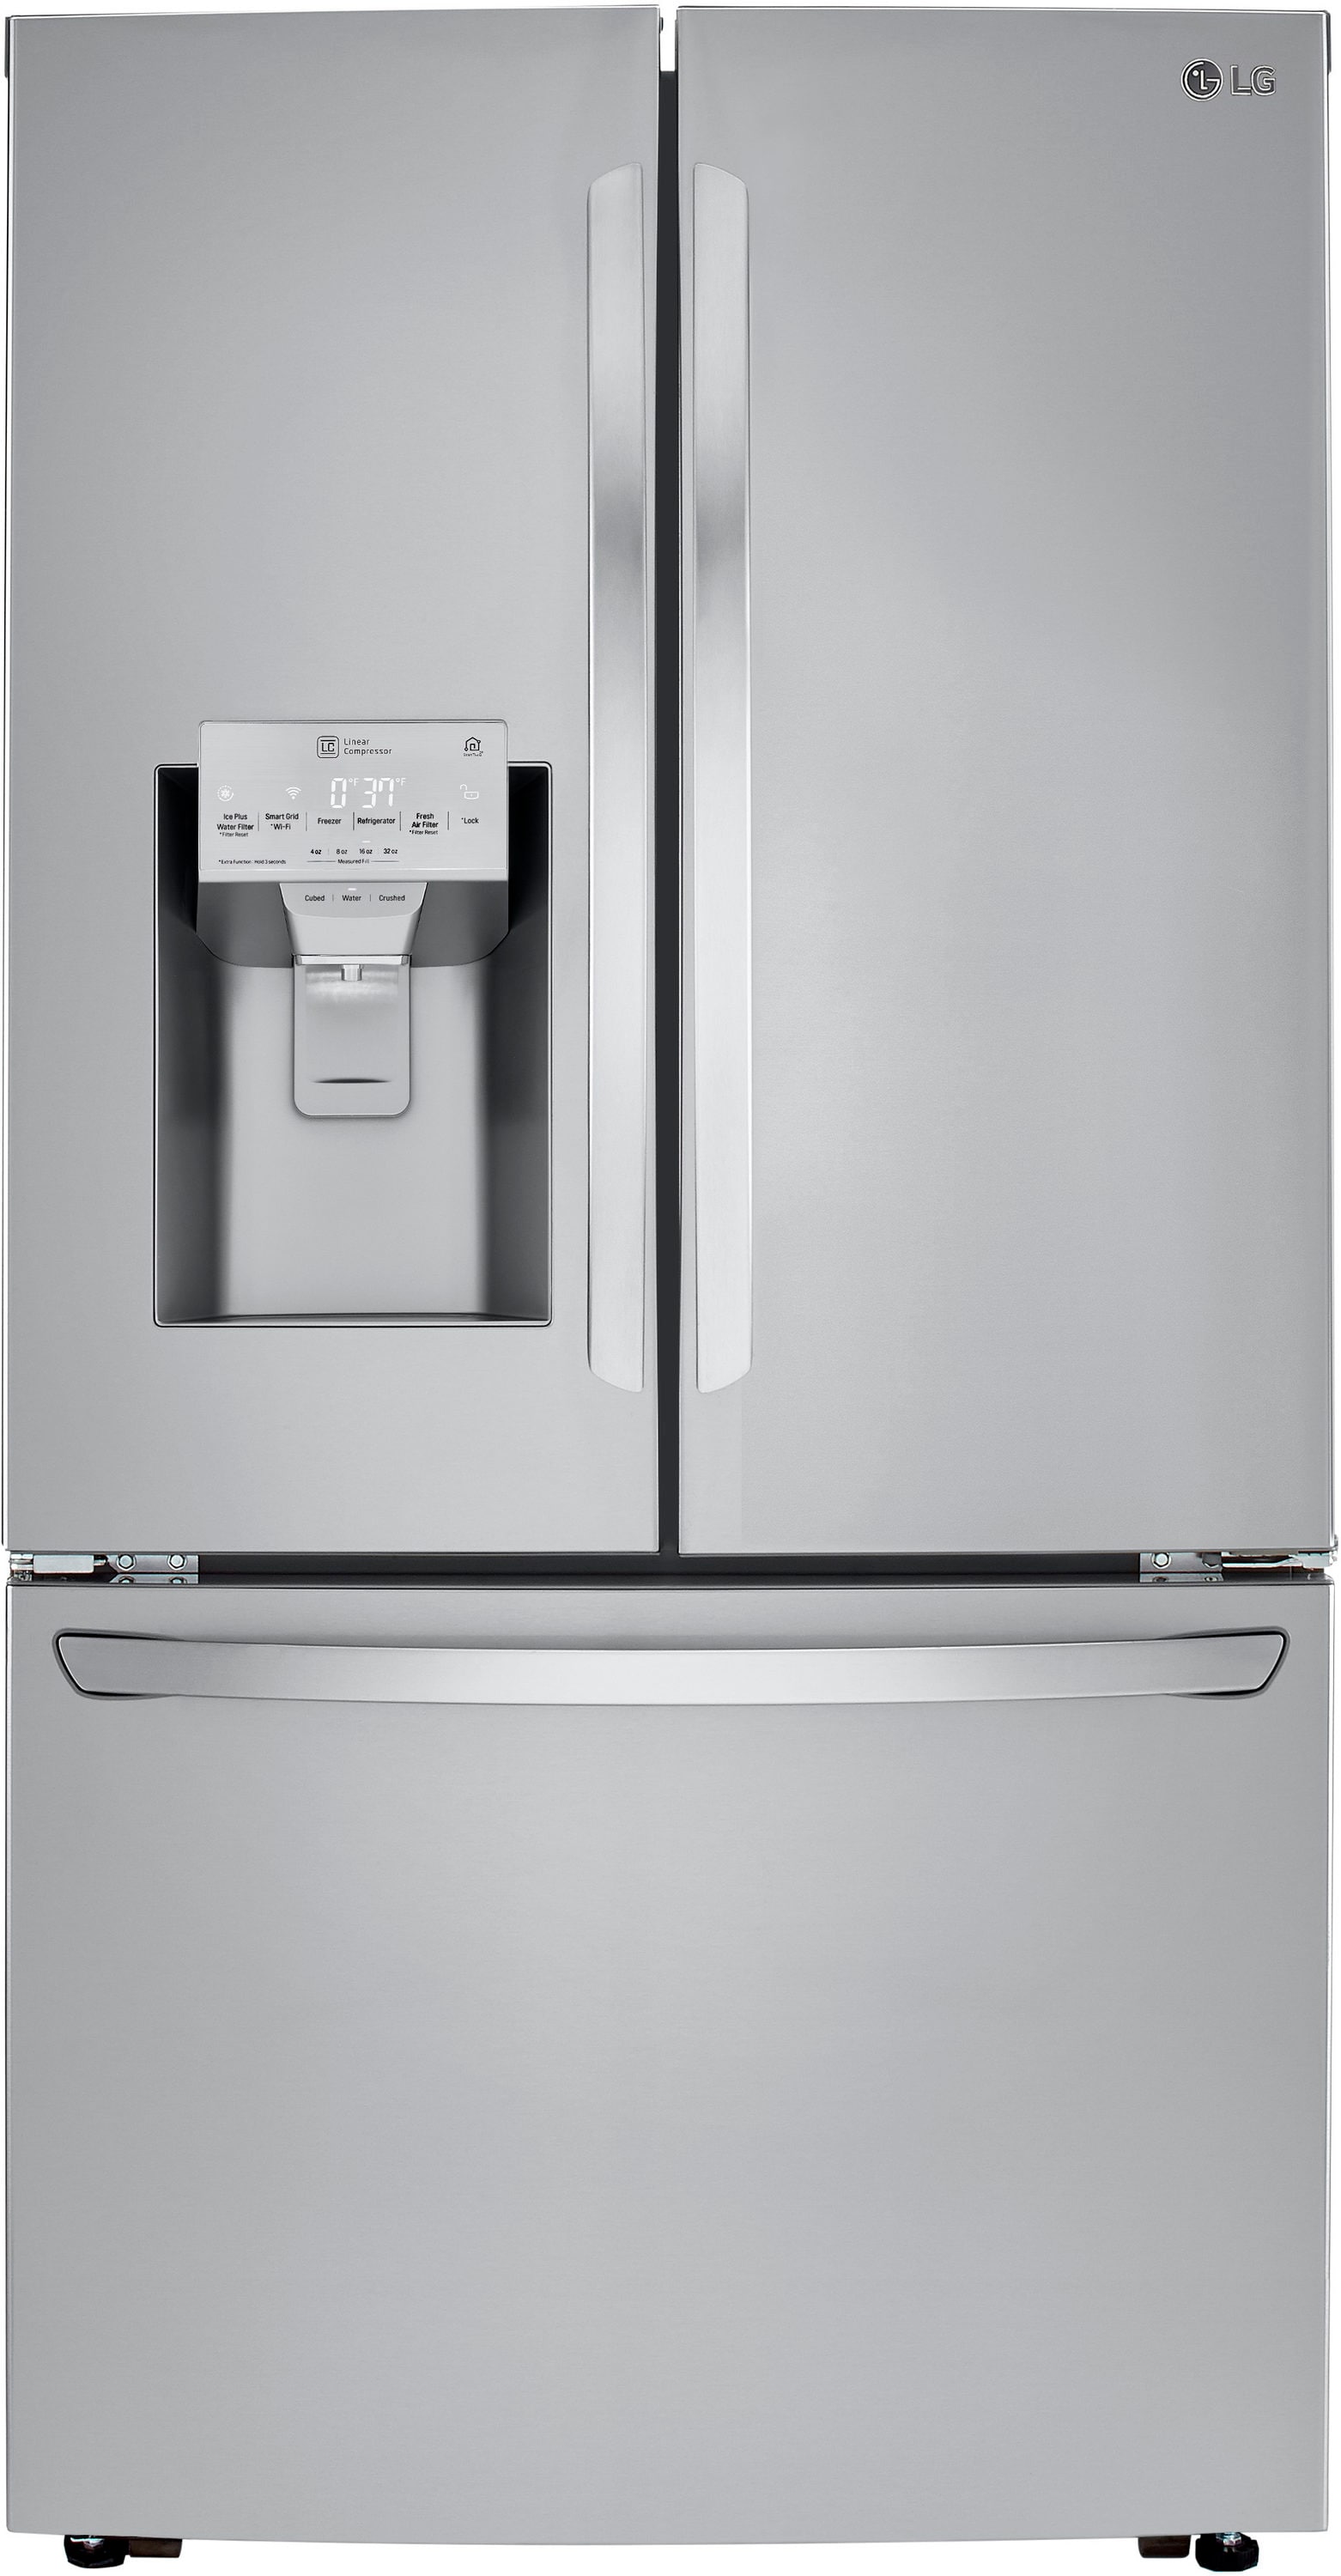 LG STUDIO 24 cu. ft. French Door Refrigerator with Instaview Door